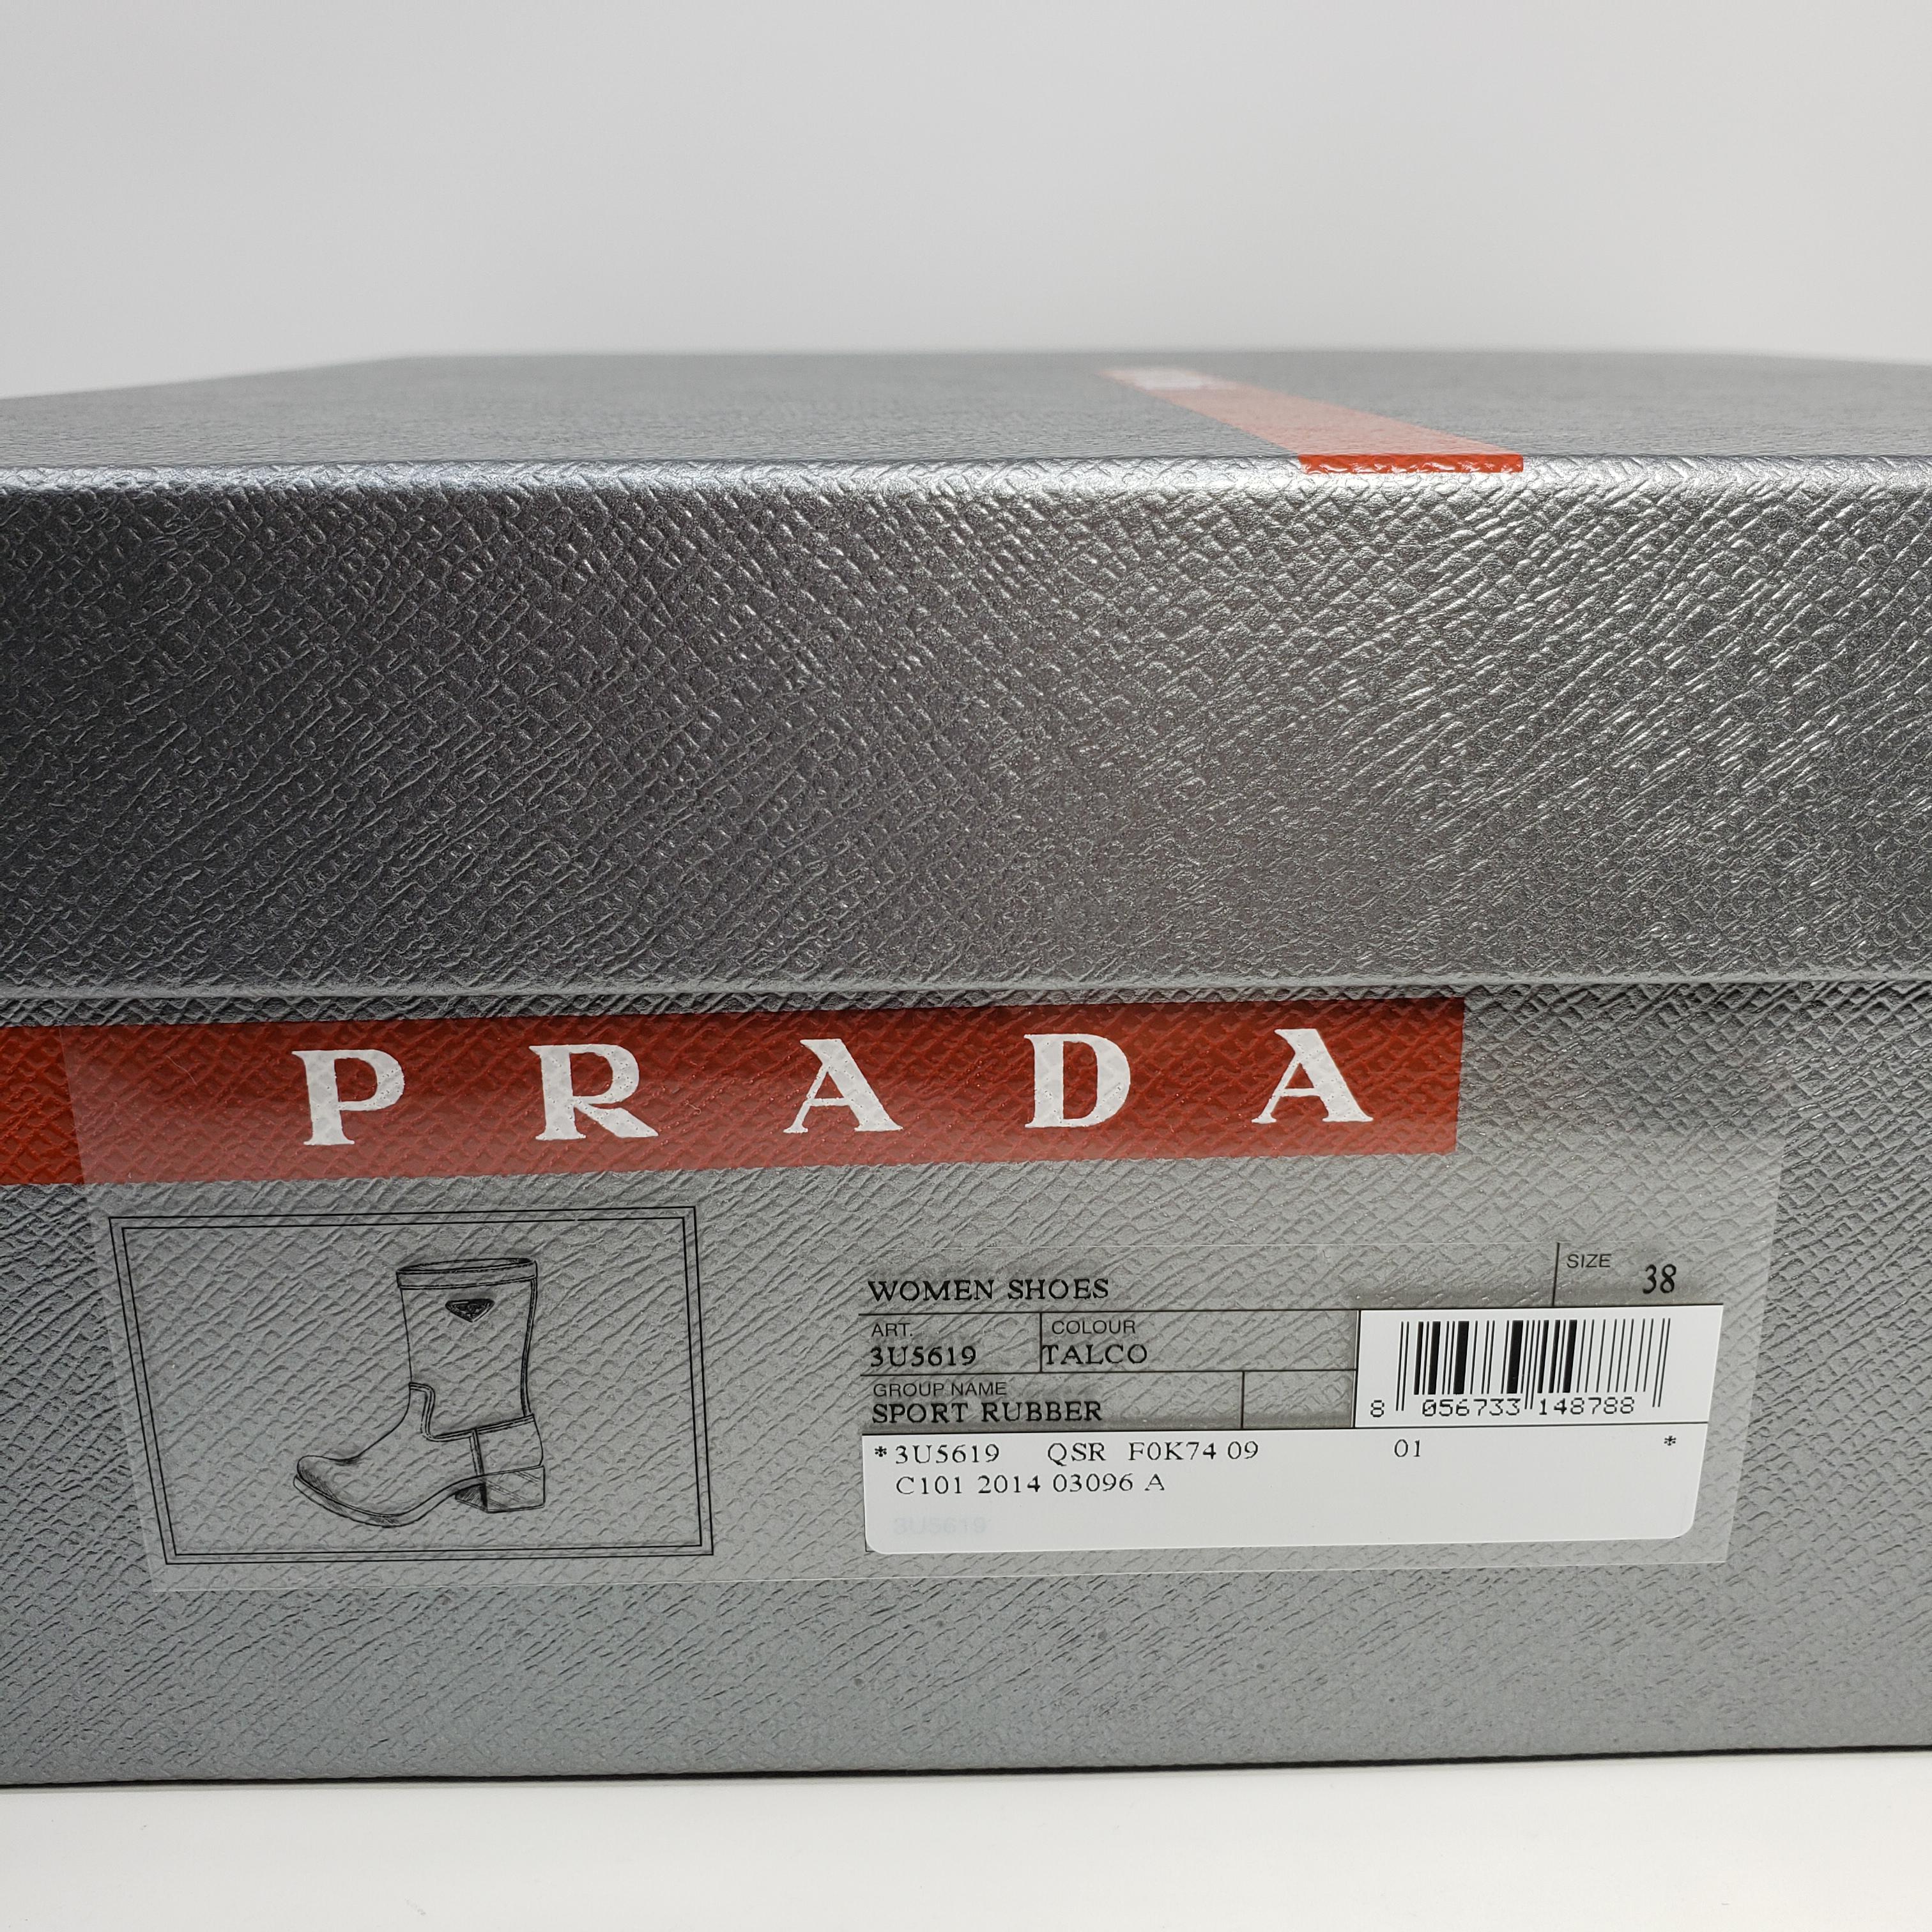 Prada Women's Sport Rubber Talco White Rain Boots Size US 8, EU 38 For Sale 1